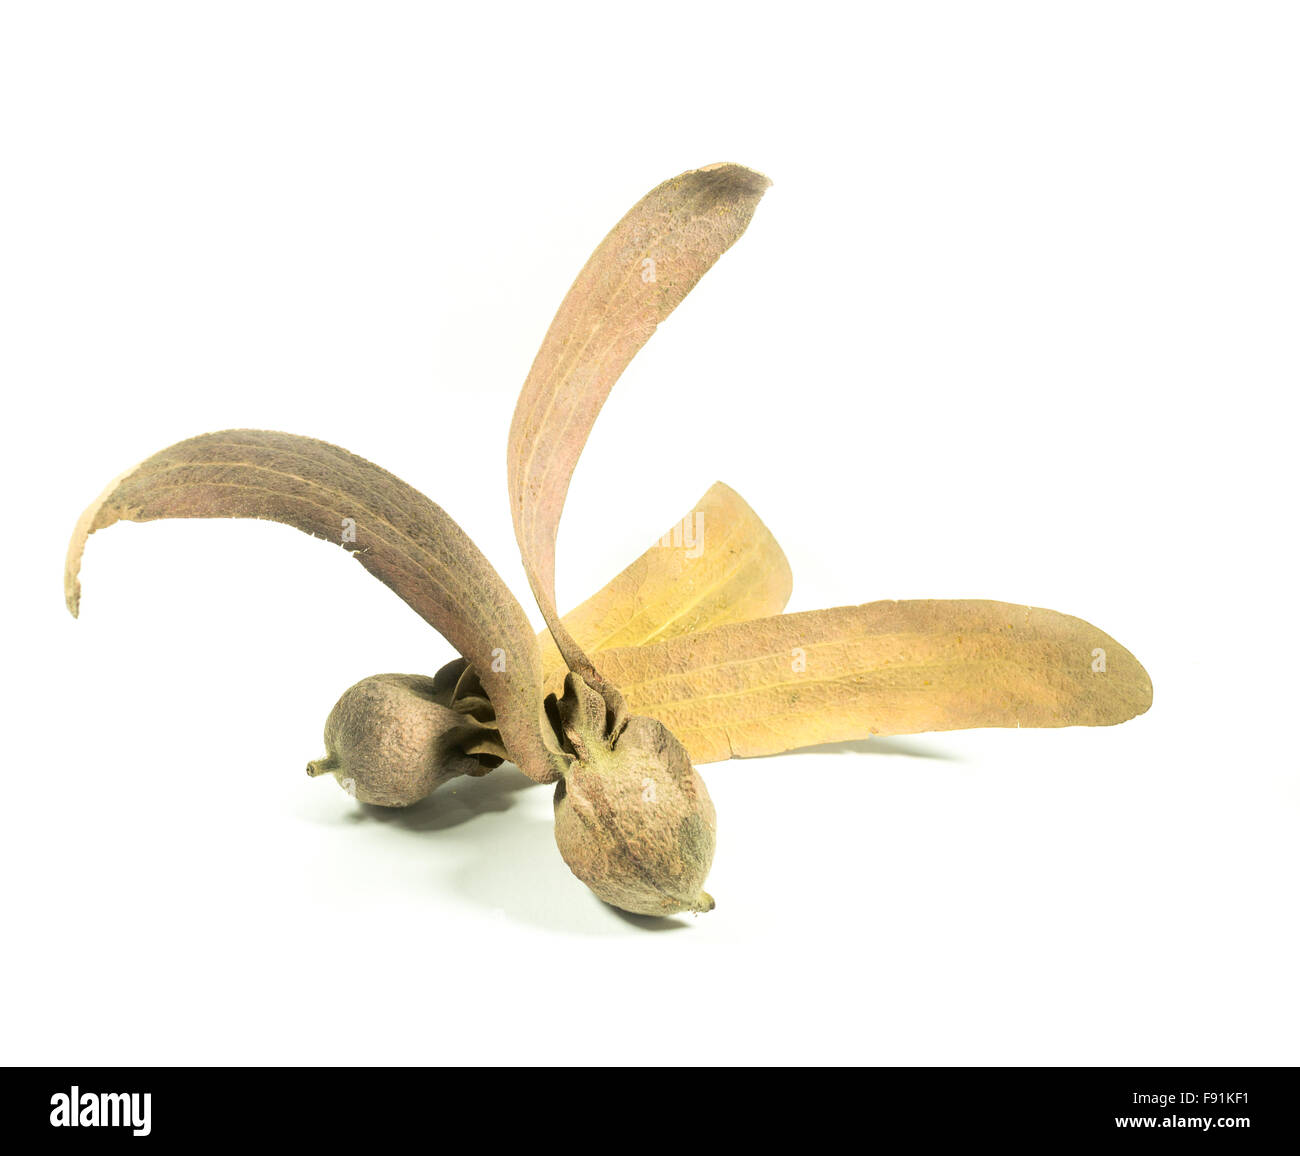 Two-winged fruit of Dipterocarpus isolated on white background, stock photo Stock Photo